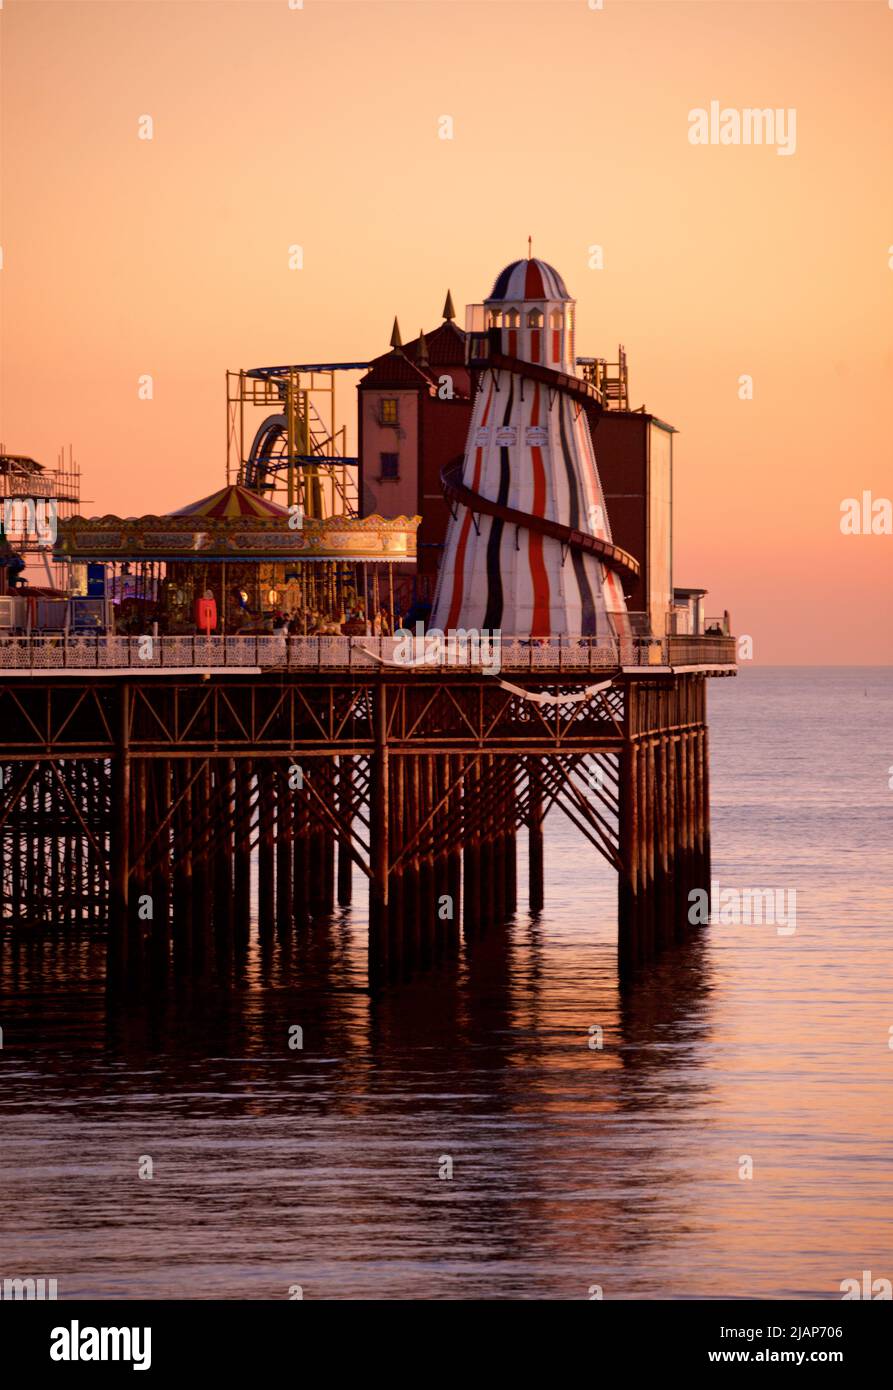 Brighton's Palace Pier ou BRIGHTON PIER. Brighton & Hove, Sussex, Angleterre, Royaume-Uni. Photographié à la tombée de la nuit avec le squelette d'helter et les divertissements. Banque D'Images